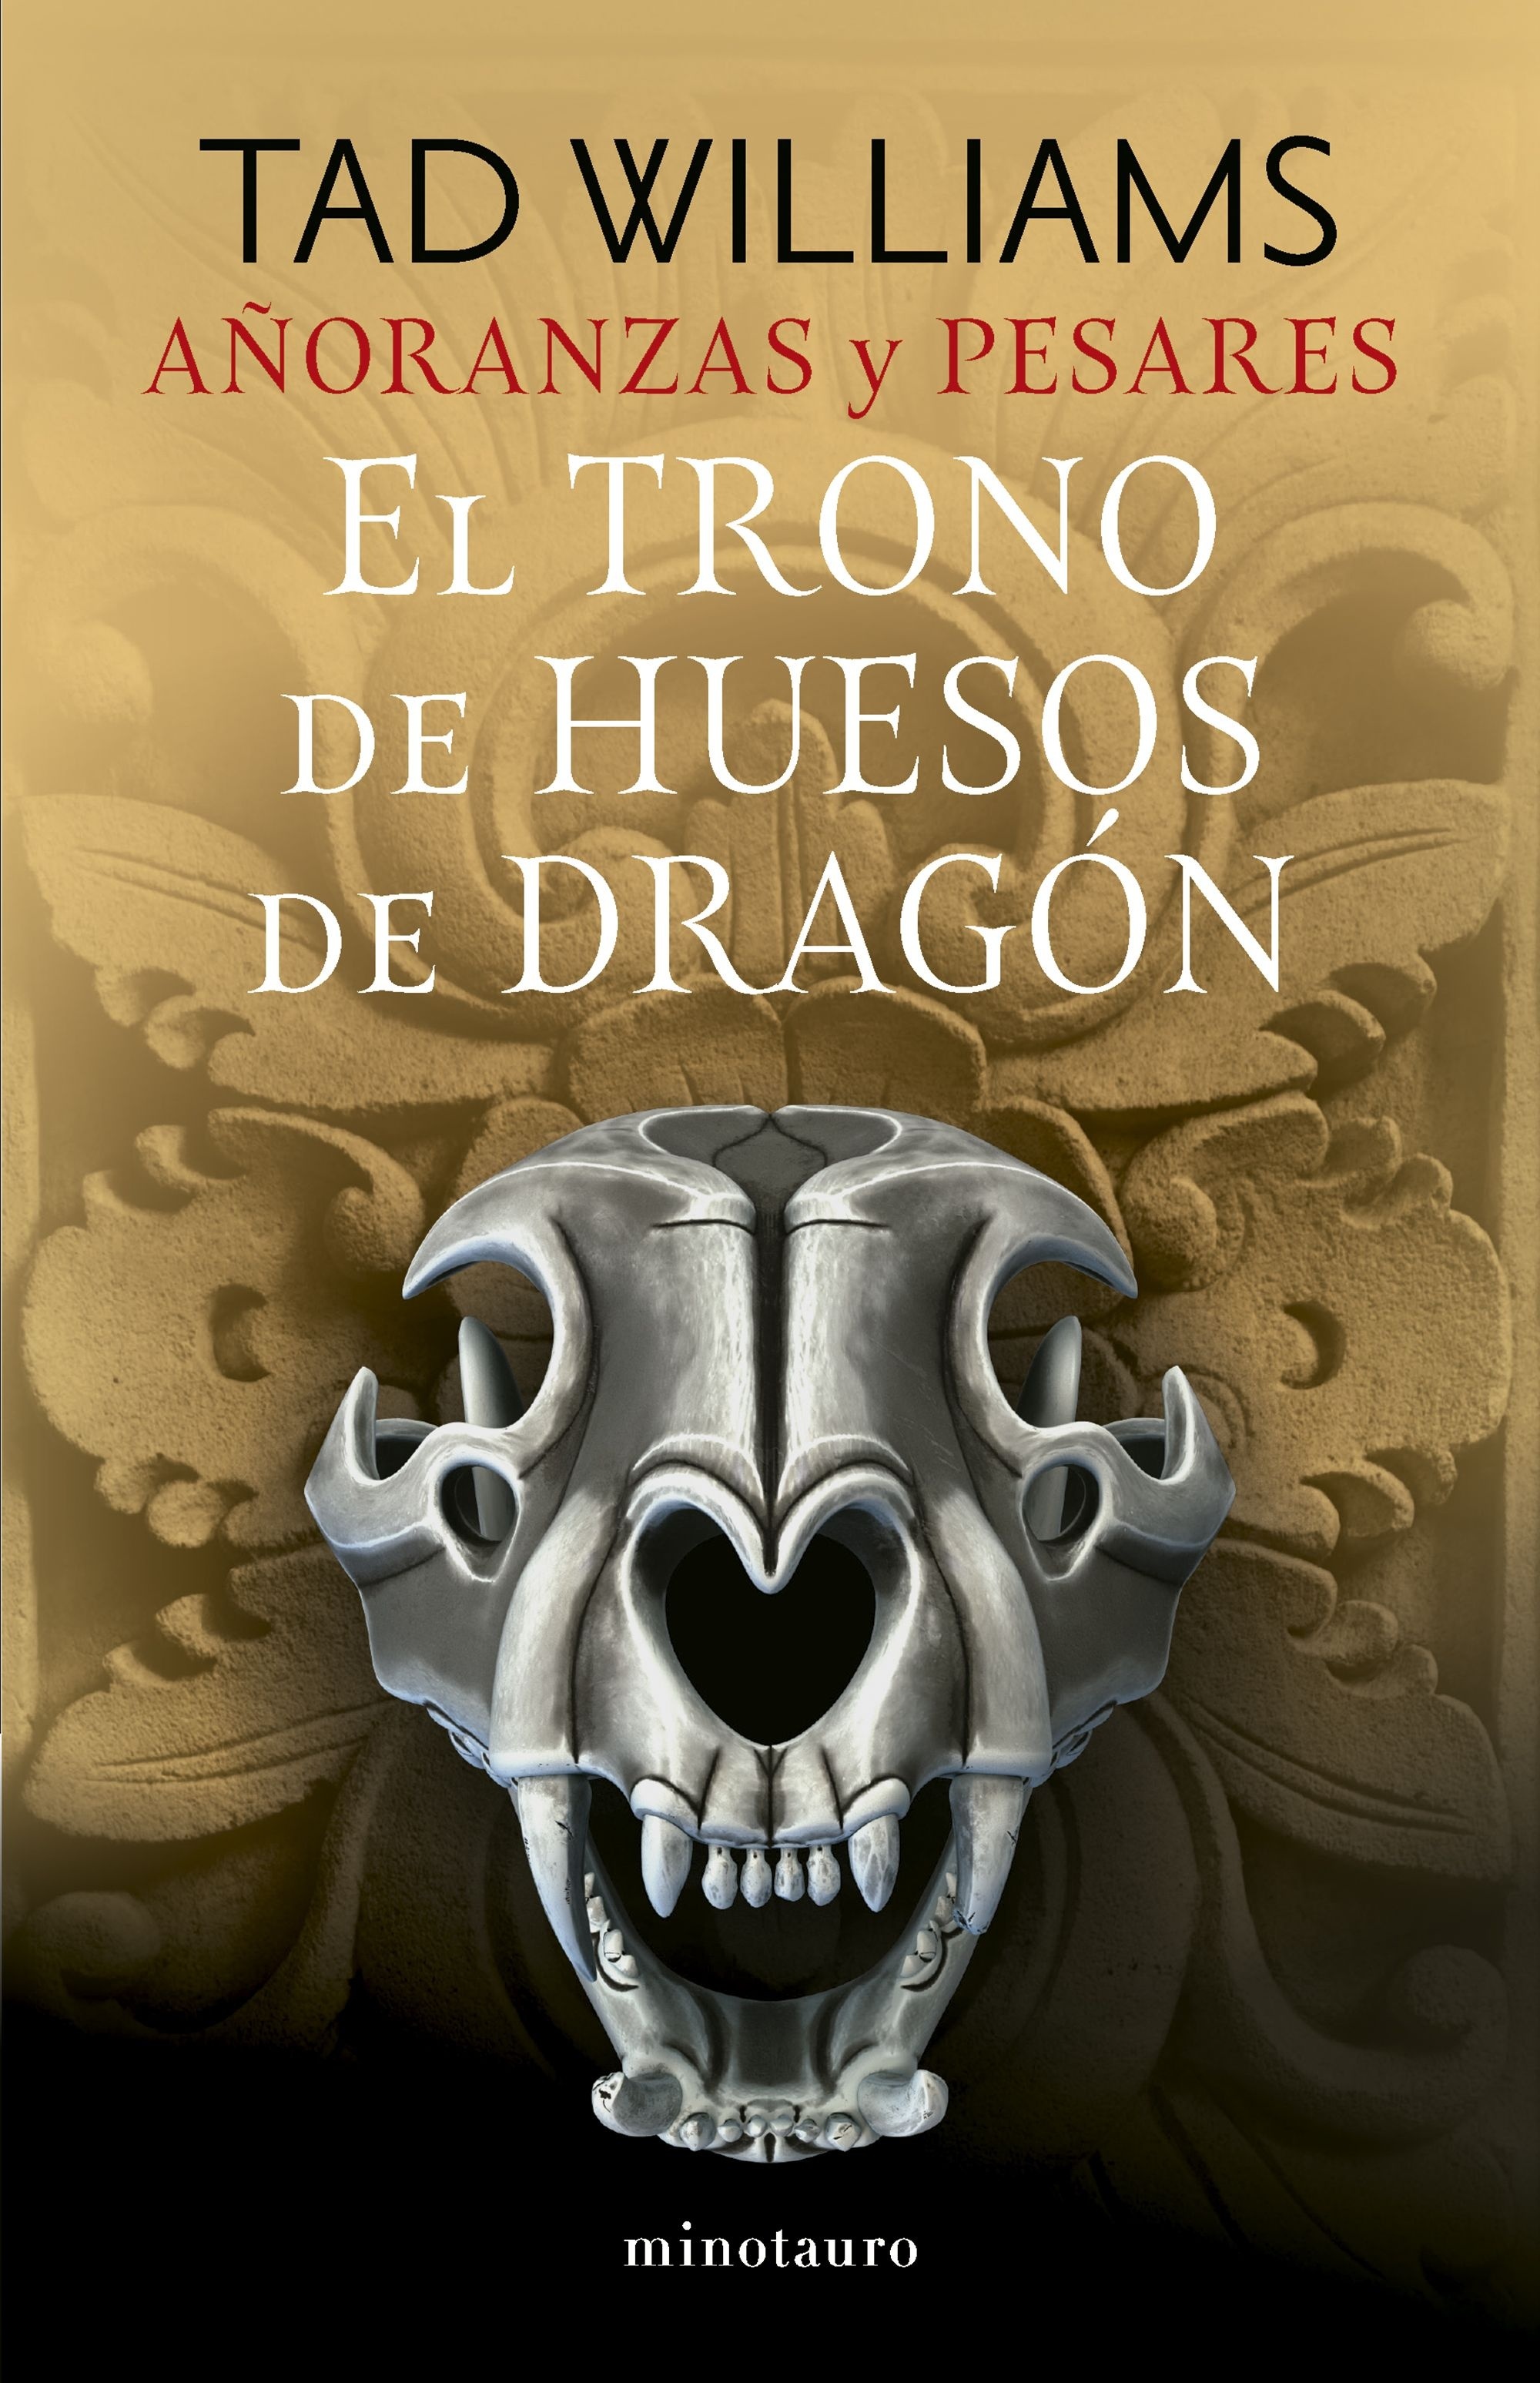 Añoranzas y pesares 1. El trono de huesos de dragón